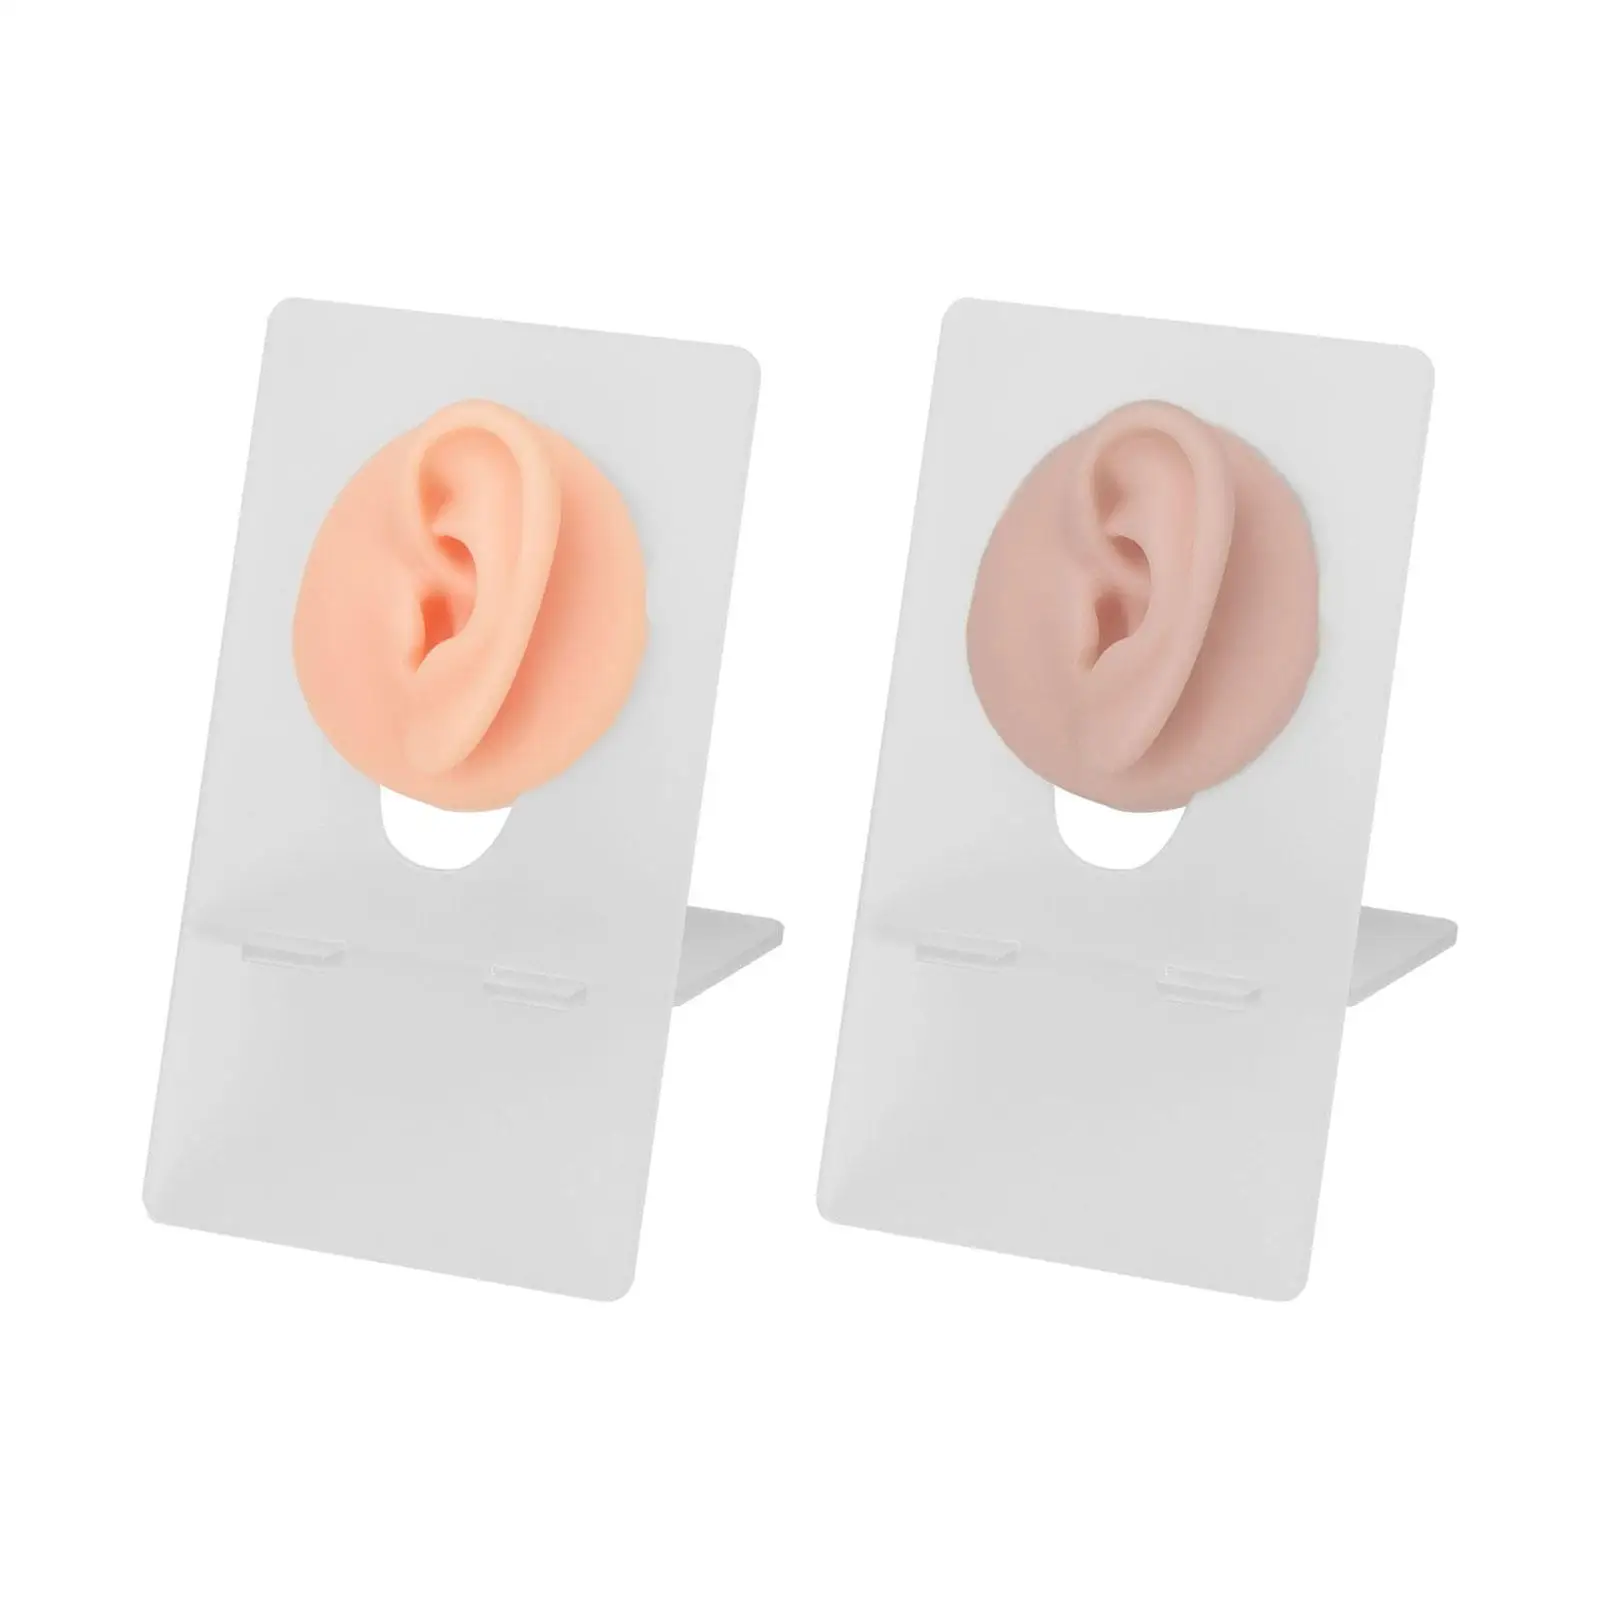 

Мягкая силиконовая модель уха 3D гибкий дисплей для практики пирсинга